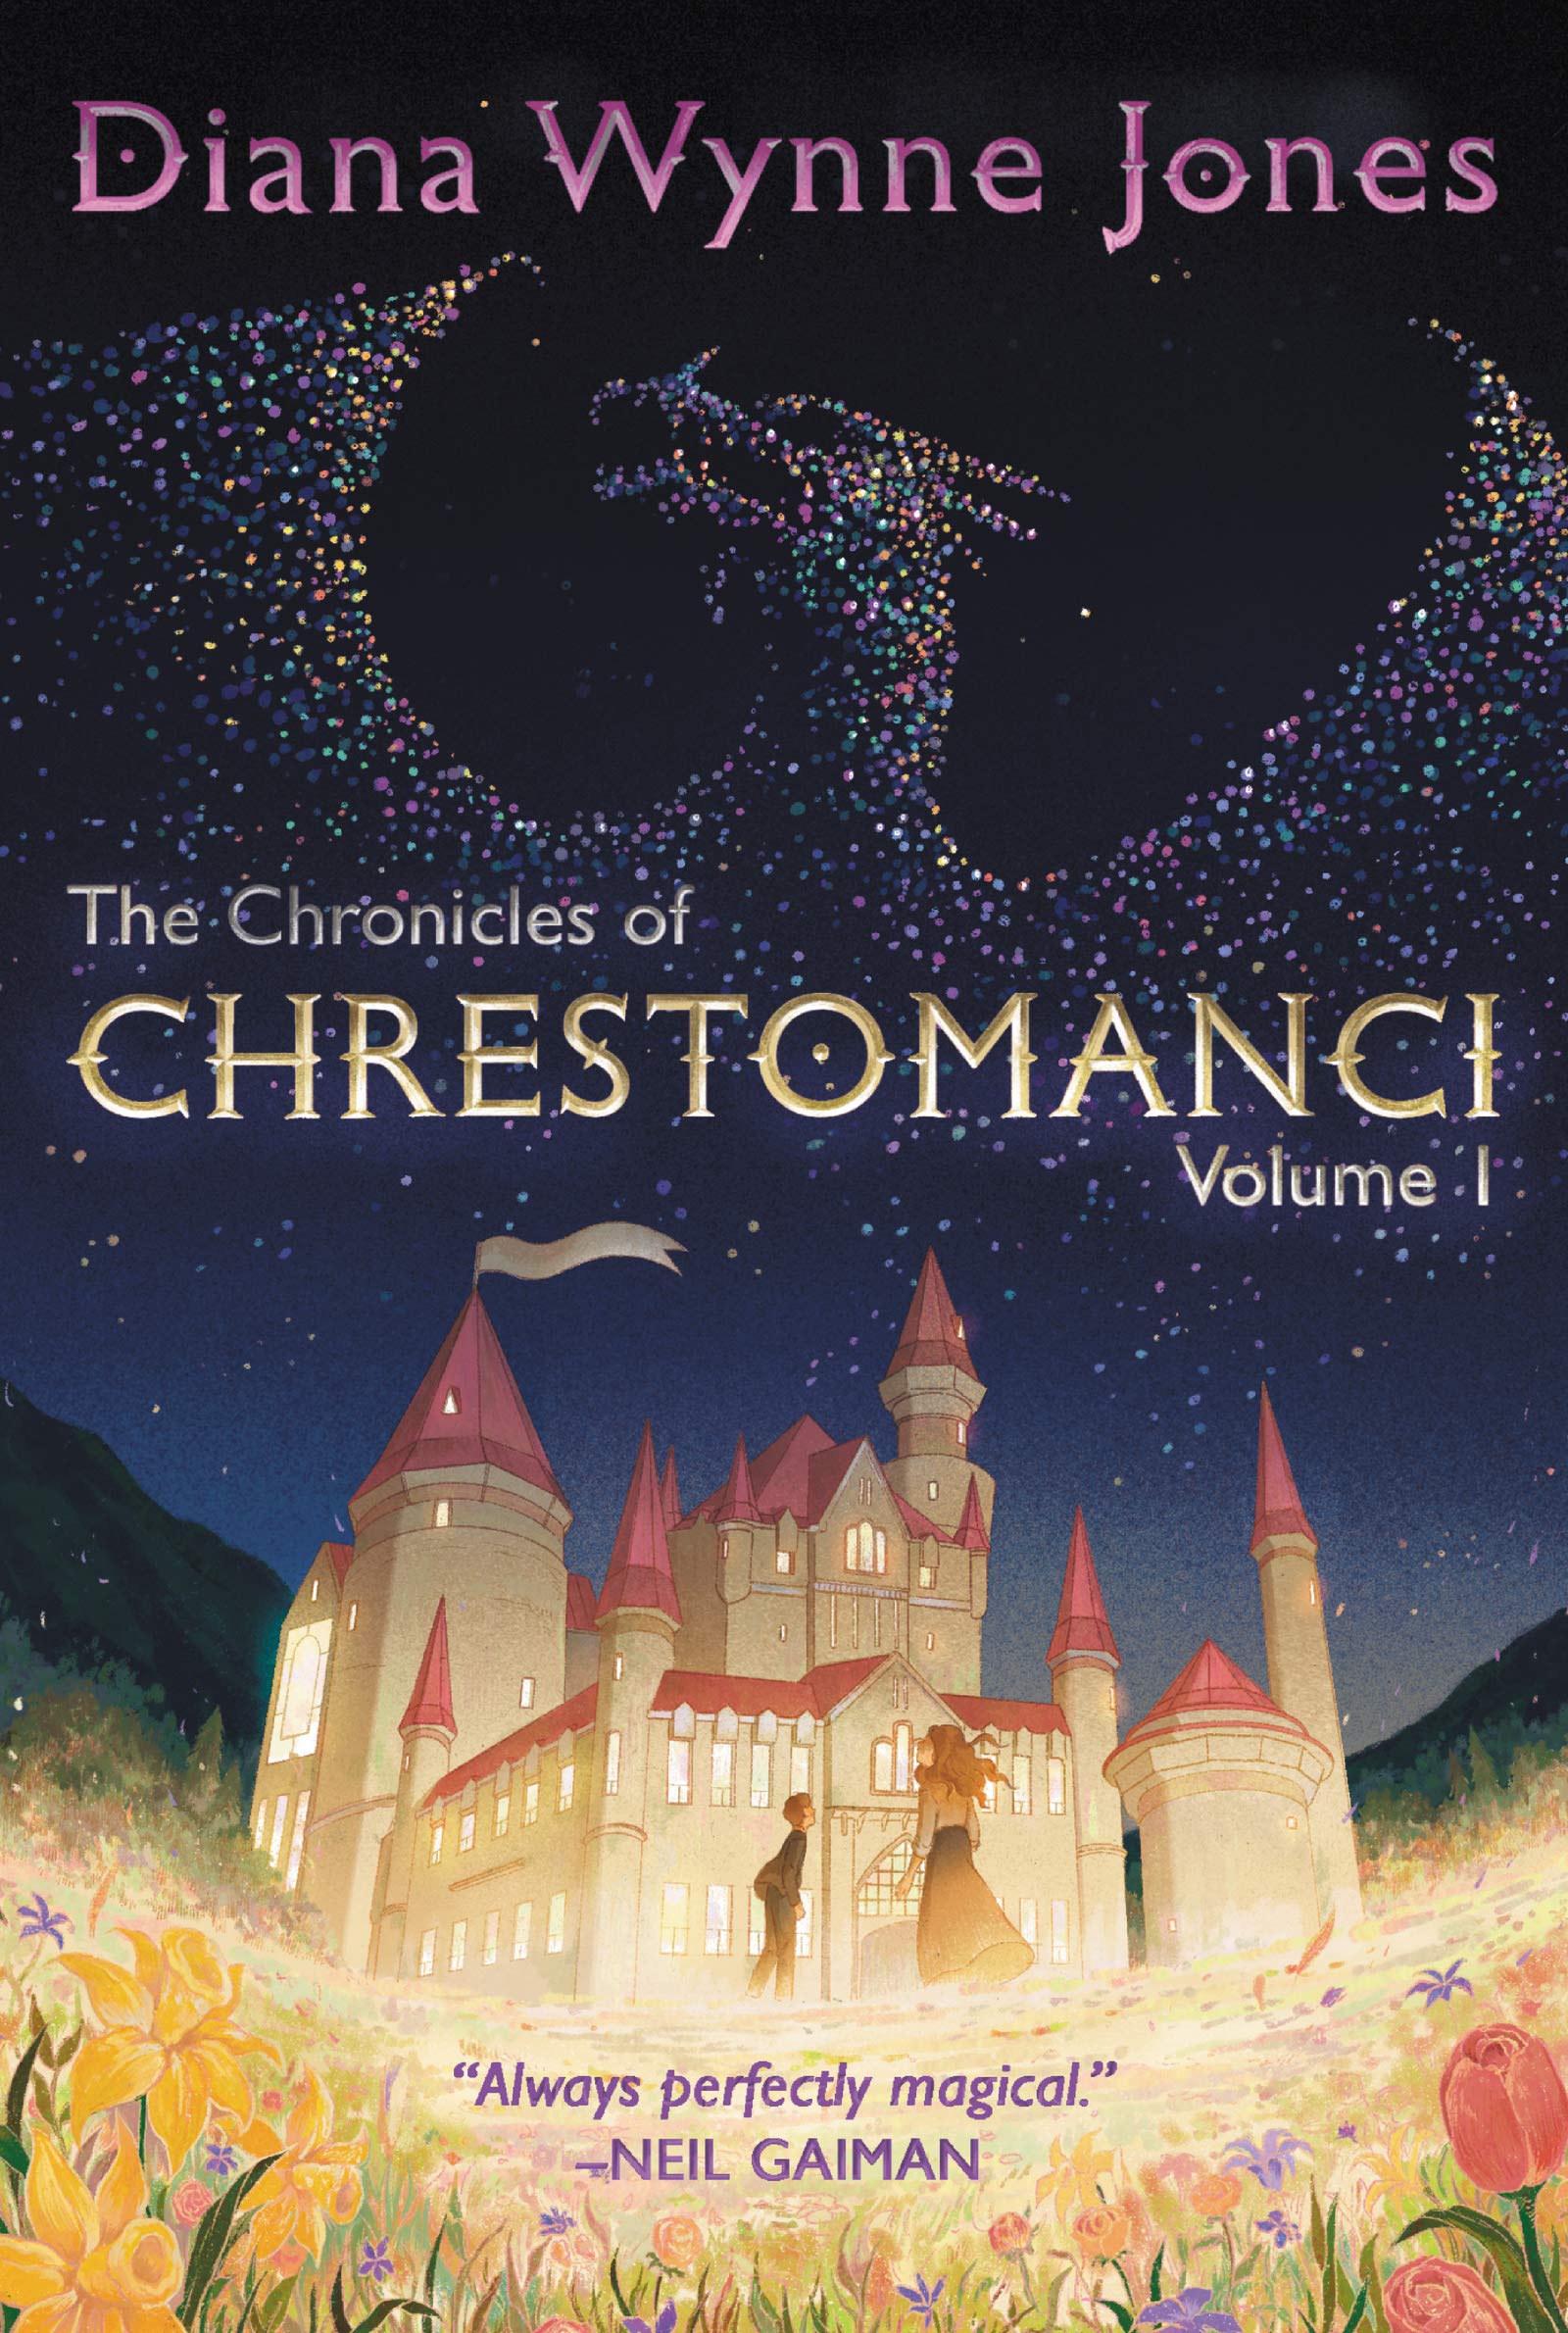 The Chronicles of Chrestomanci - Volume I